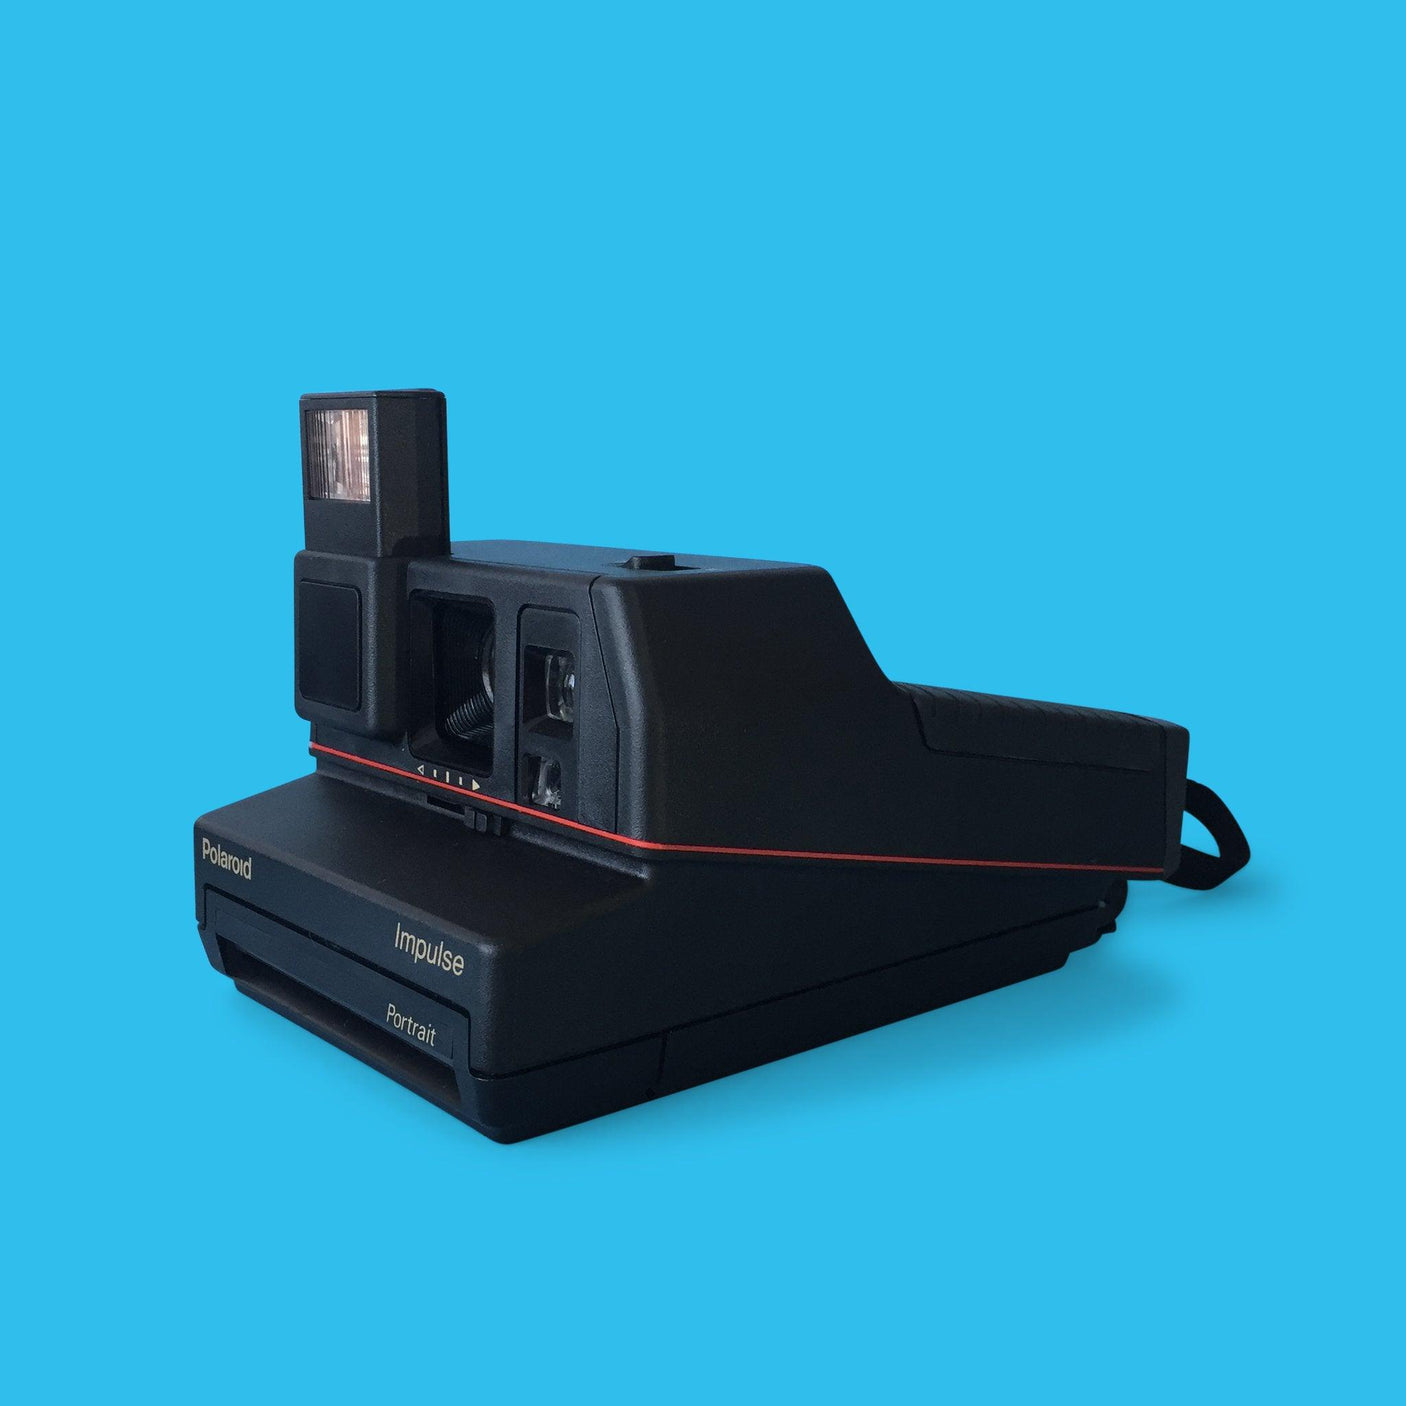 Polaroid Impulse 600 Instant Film Camera with Portrait Mode